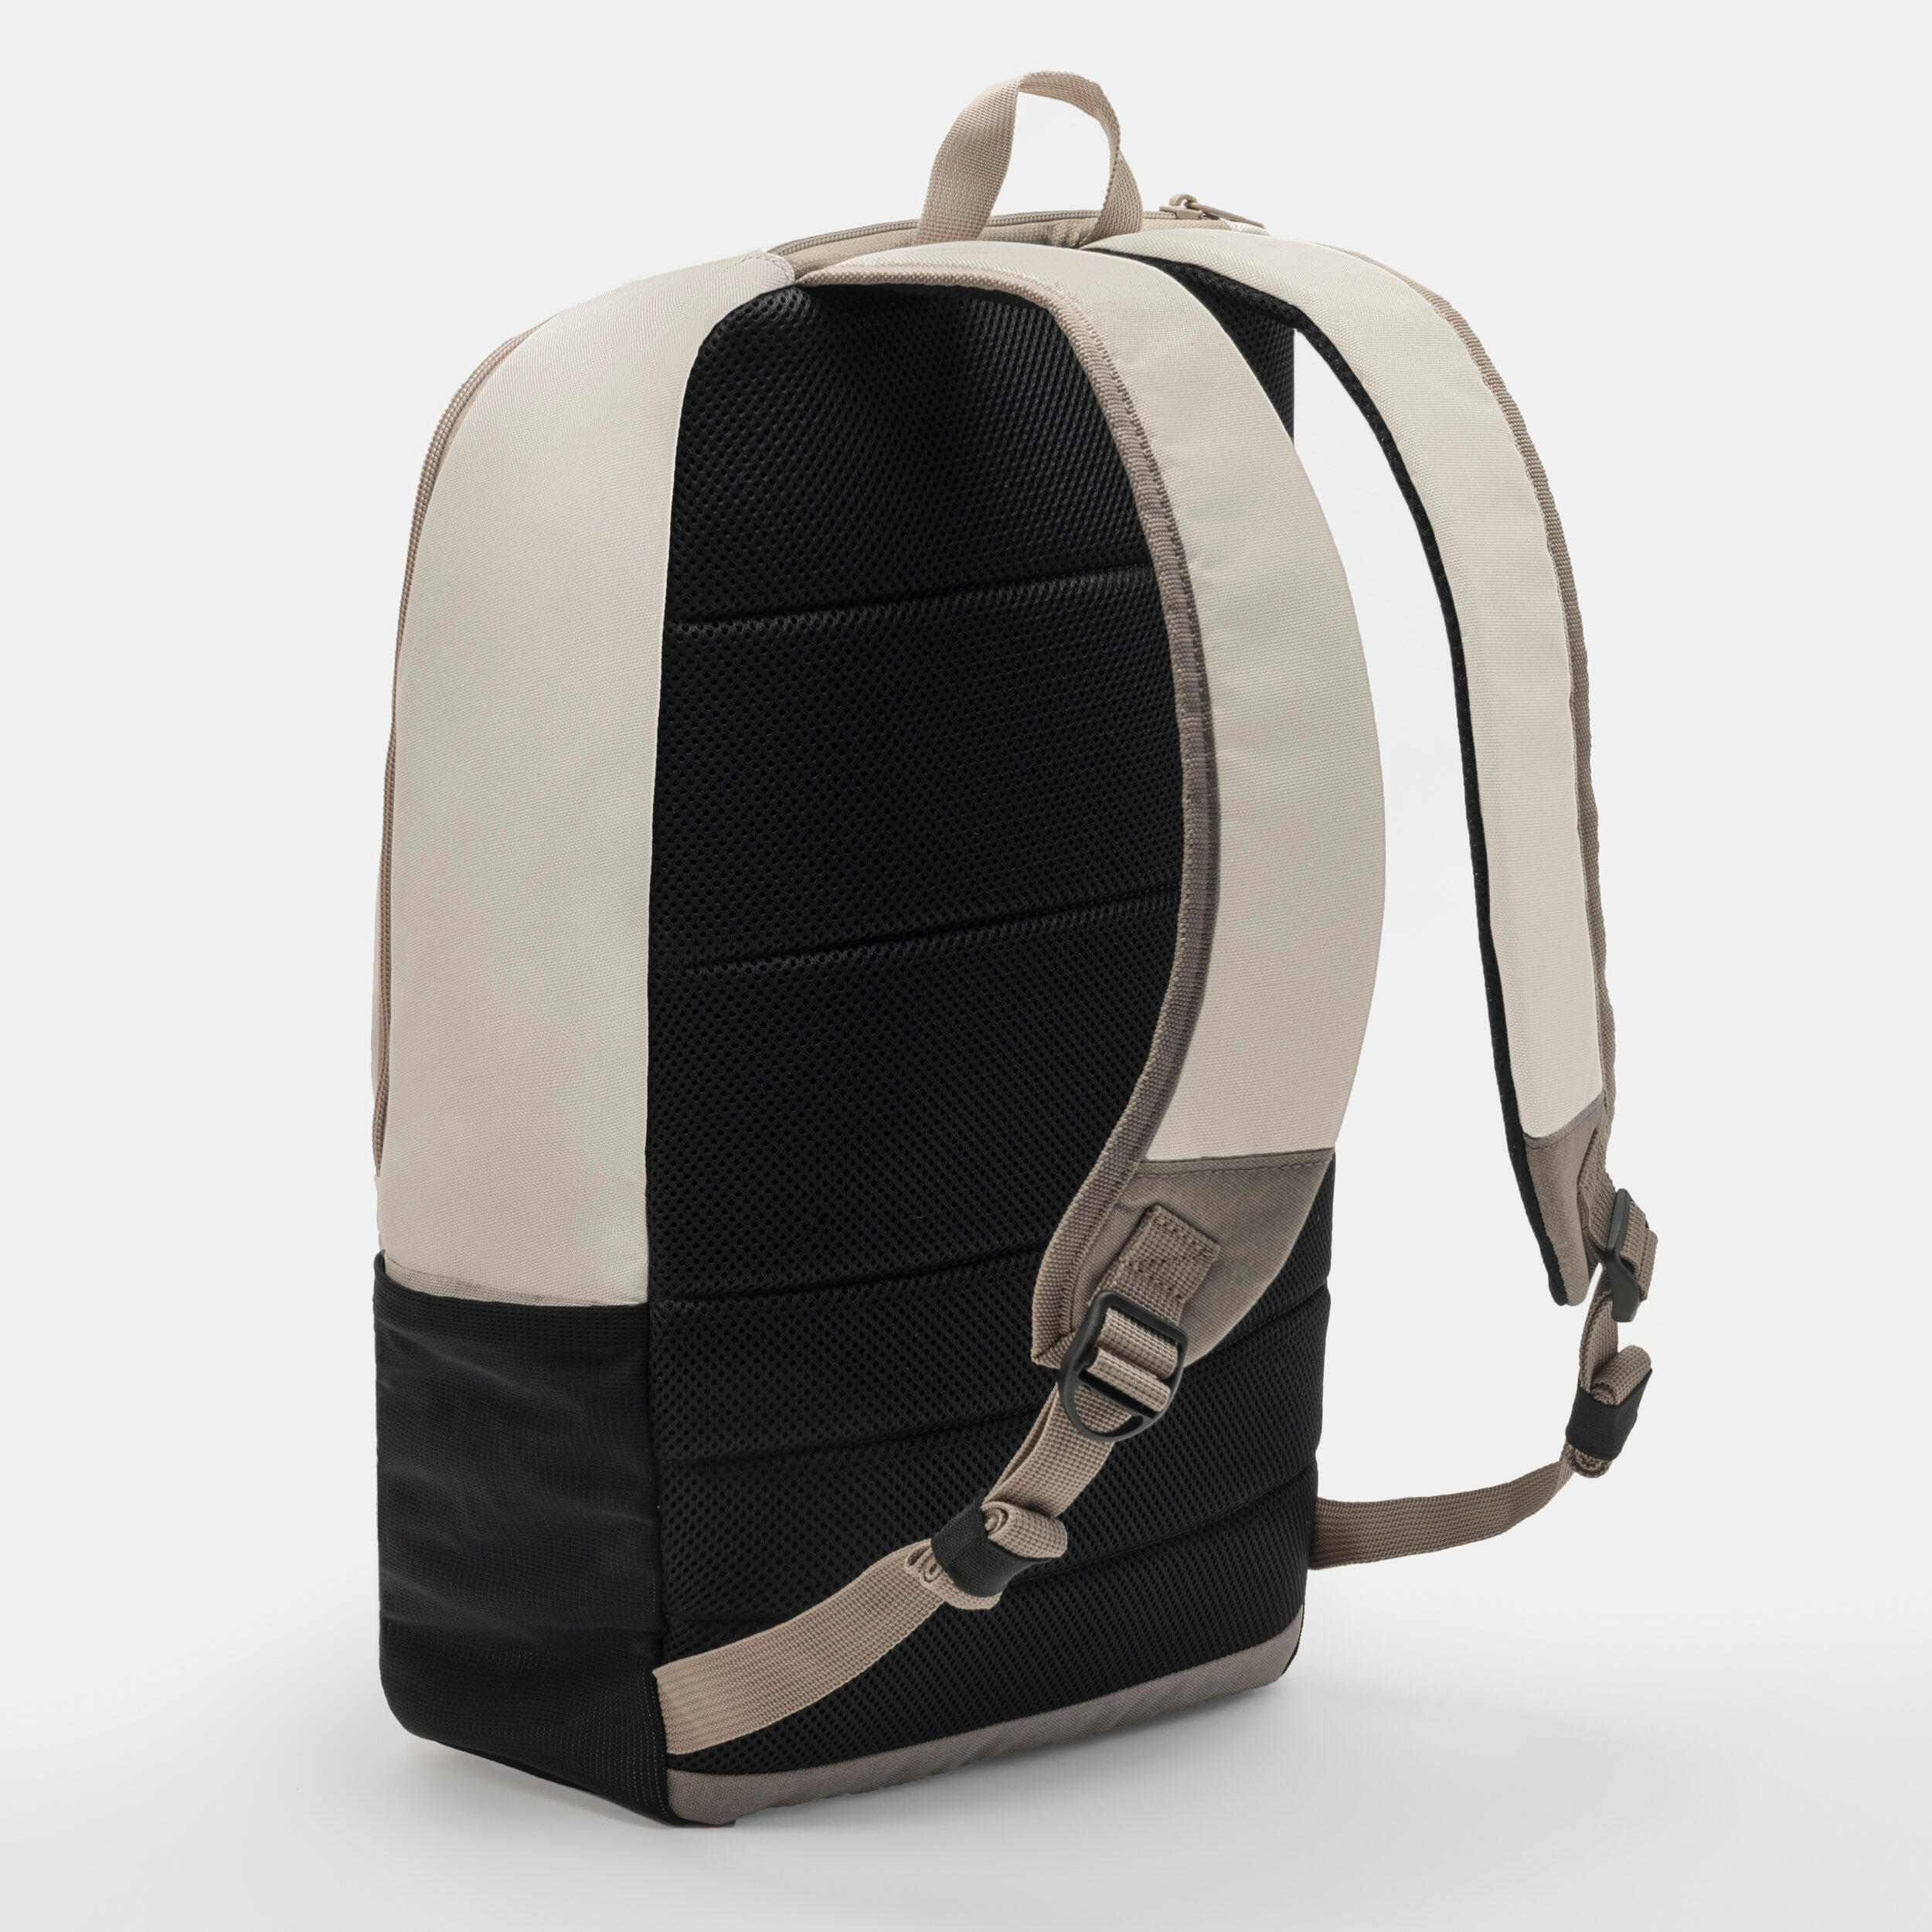 24 L Backpack Essential - Brown 2/9